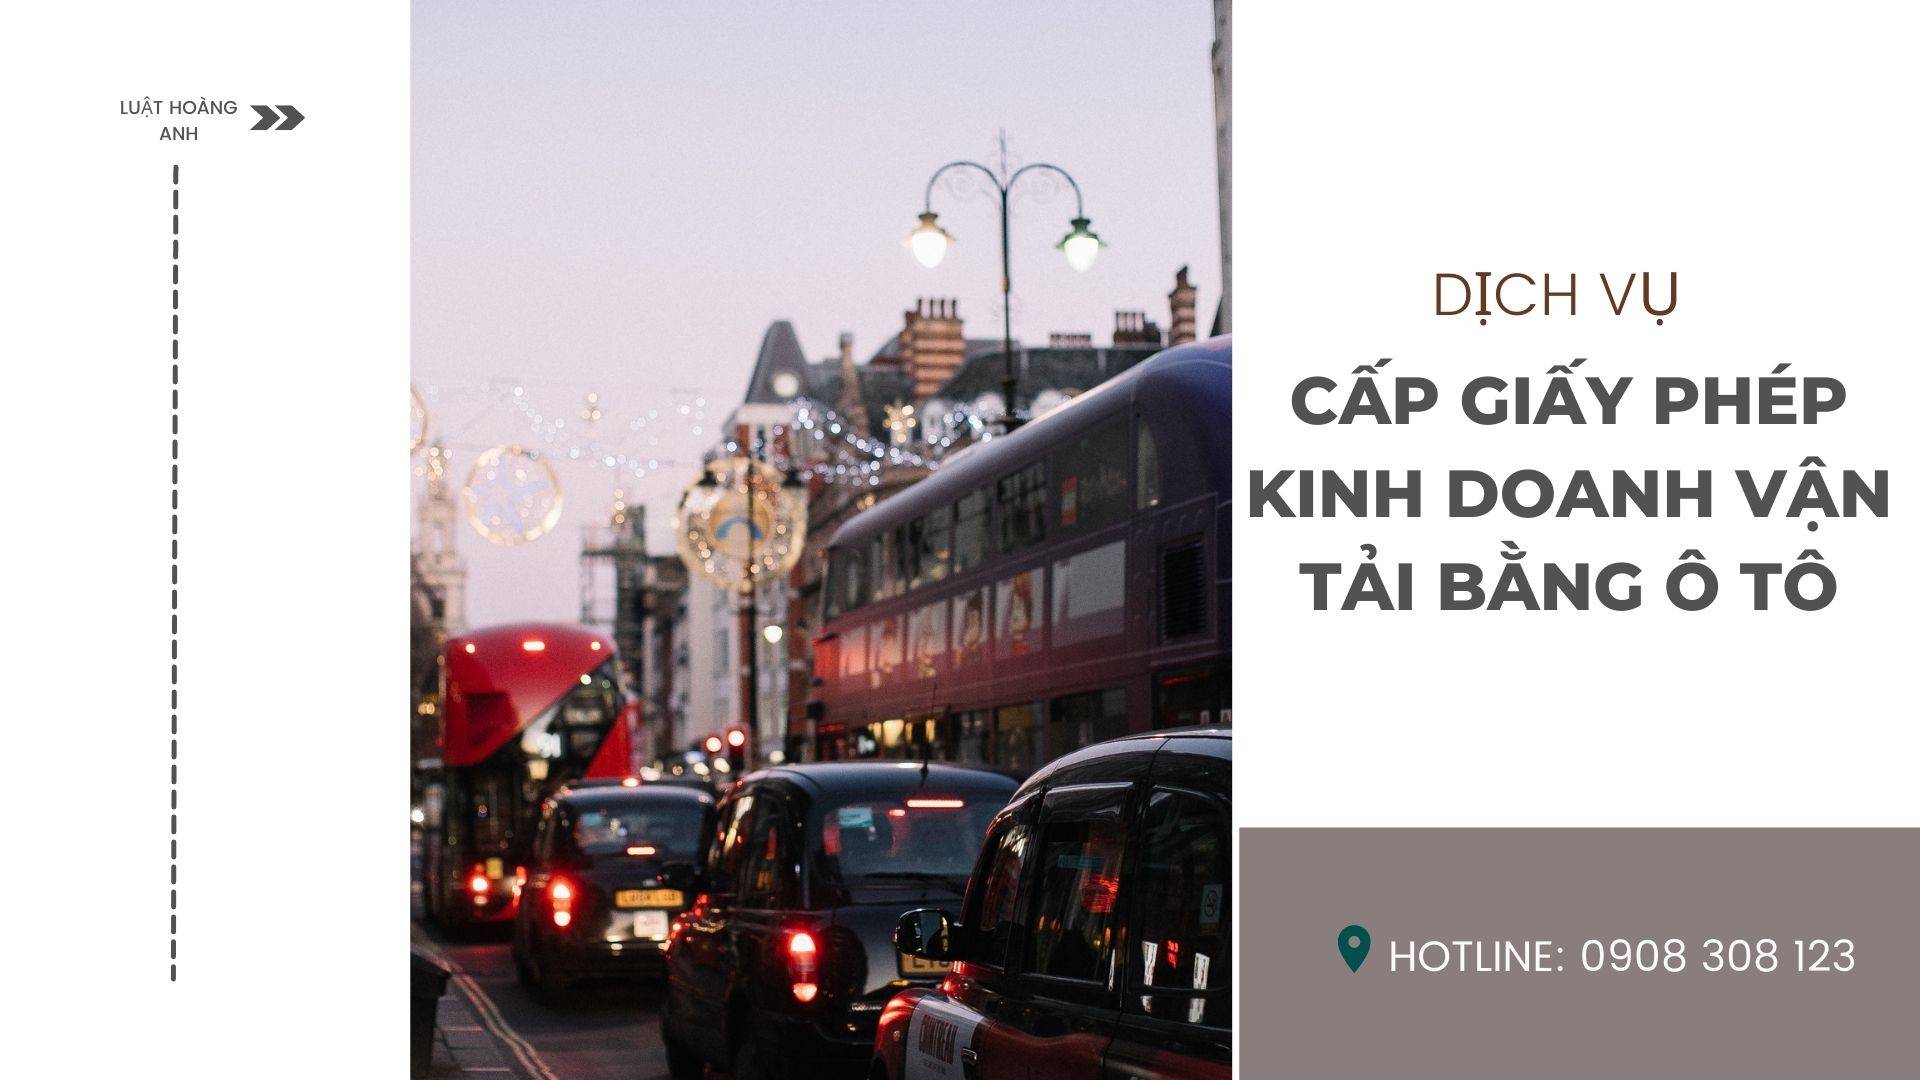 Dịch vụ cấp giấy phép kinh doanh vận tải bằng ô tô tại tỉnh Kiên Giang